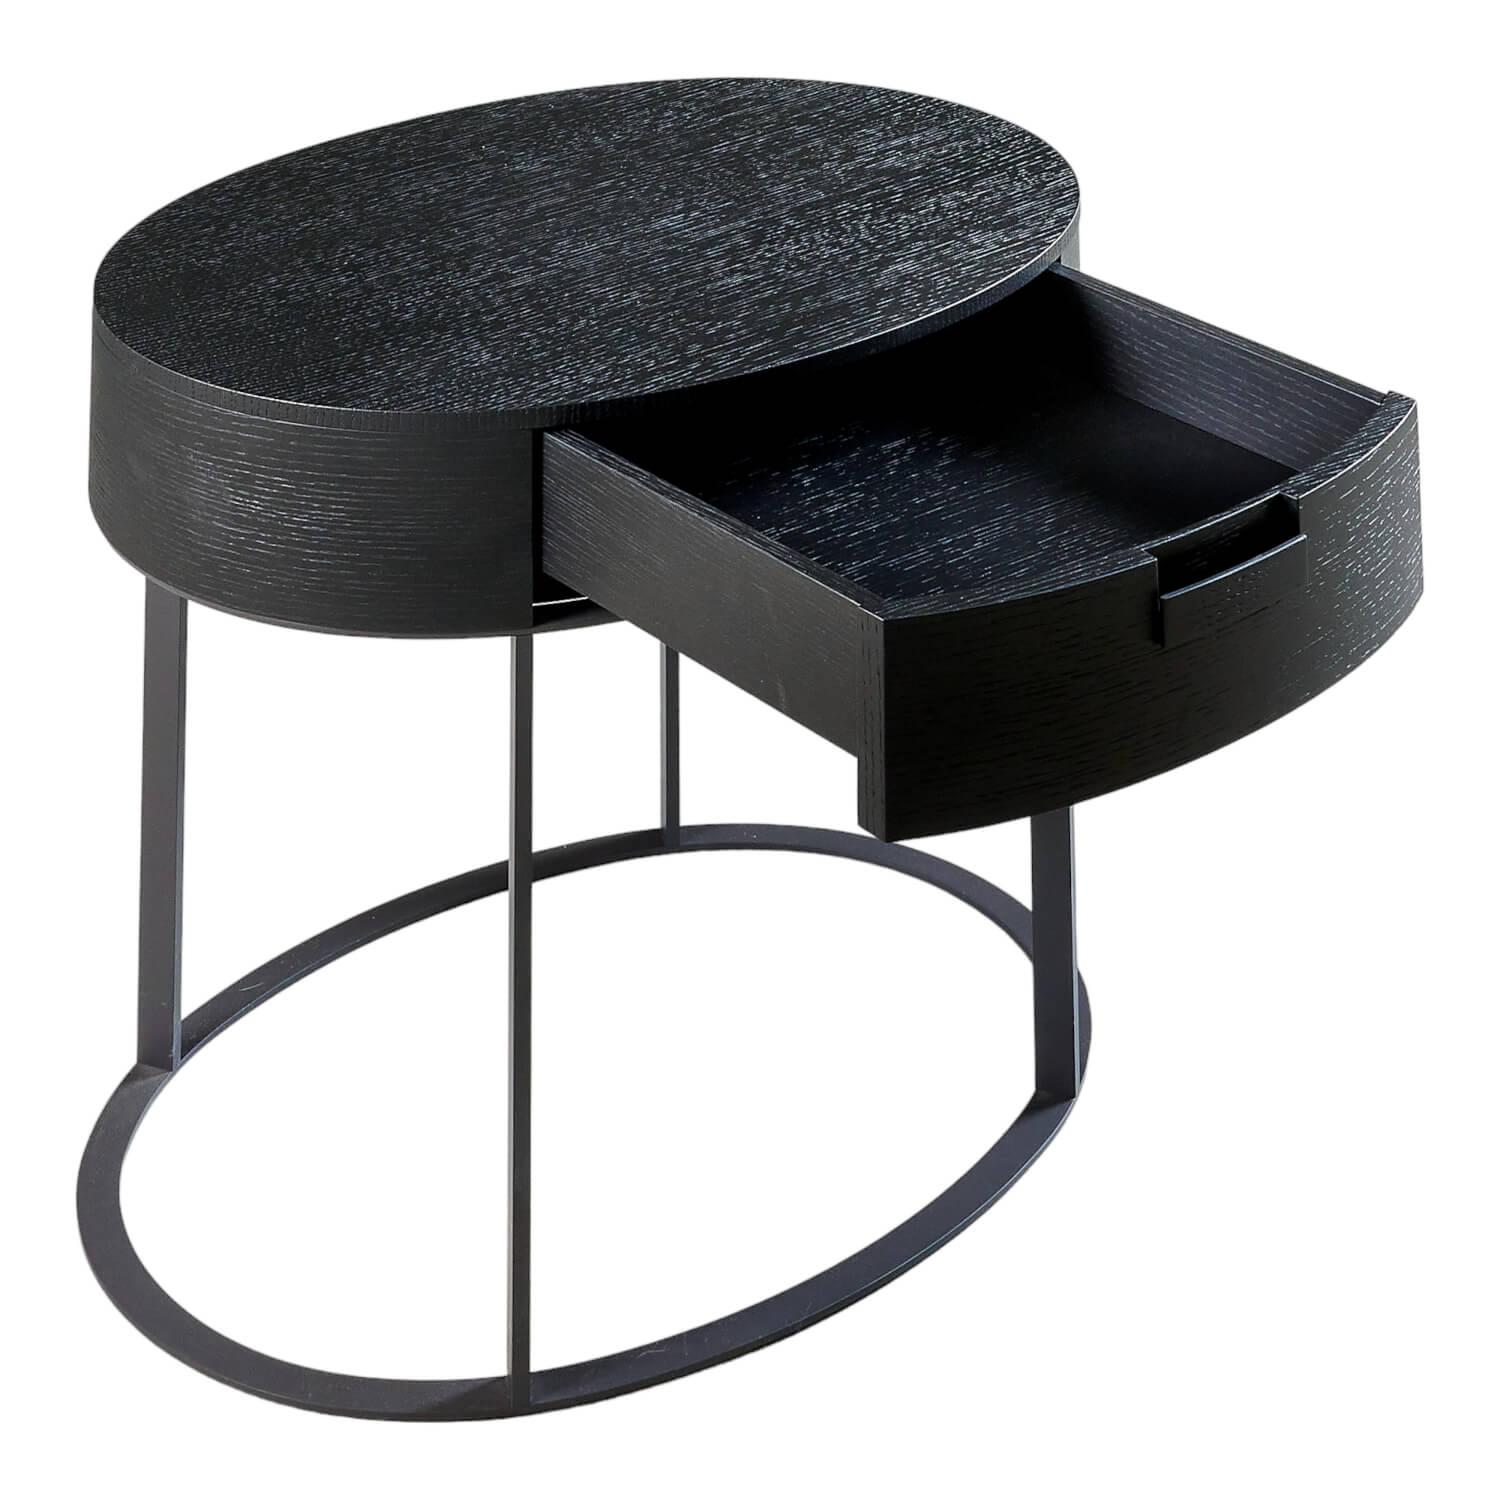 Nachttisch Beistelltisch AMPHORA Oval Gestell Stahl Graphit Lackiert 0252g Tischplatte Eiche Schwarz Gebürstet 0381n